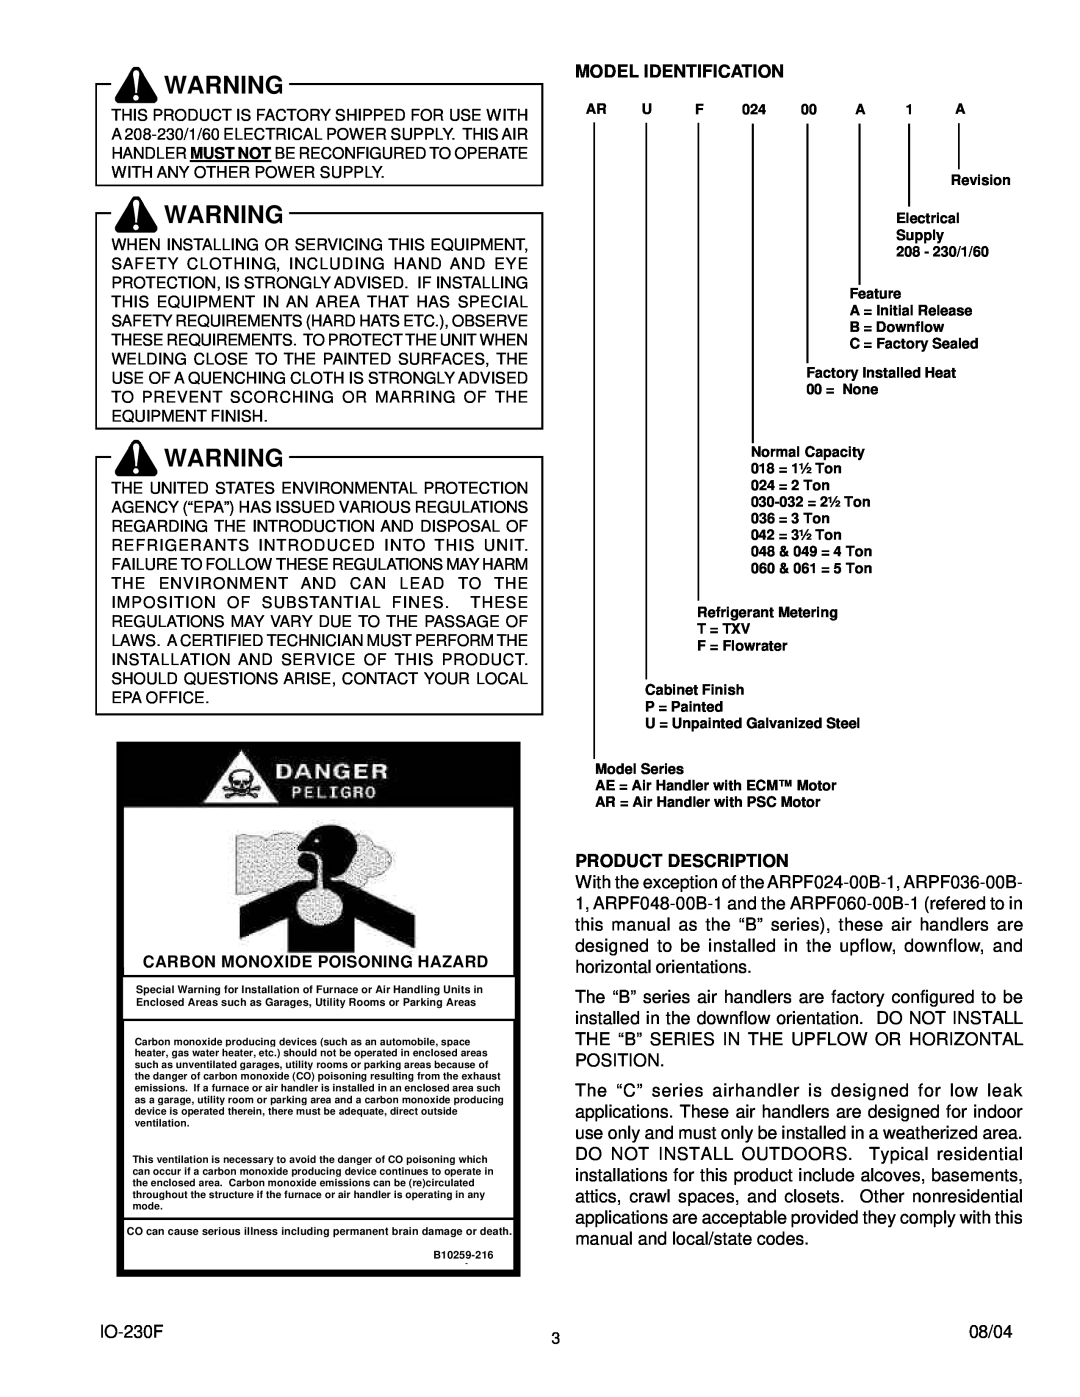 Goodman Mfg ARPT, ARPF, AEPT operating instructions Model Identification, Product Description 